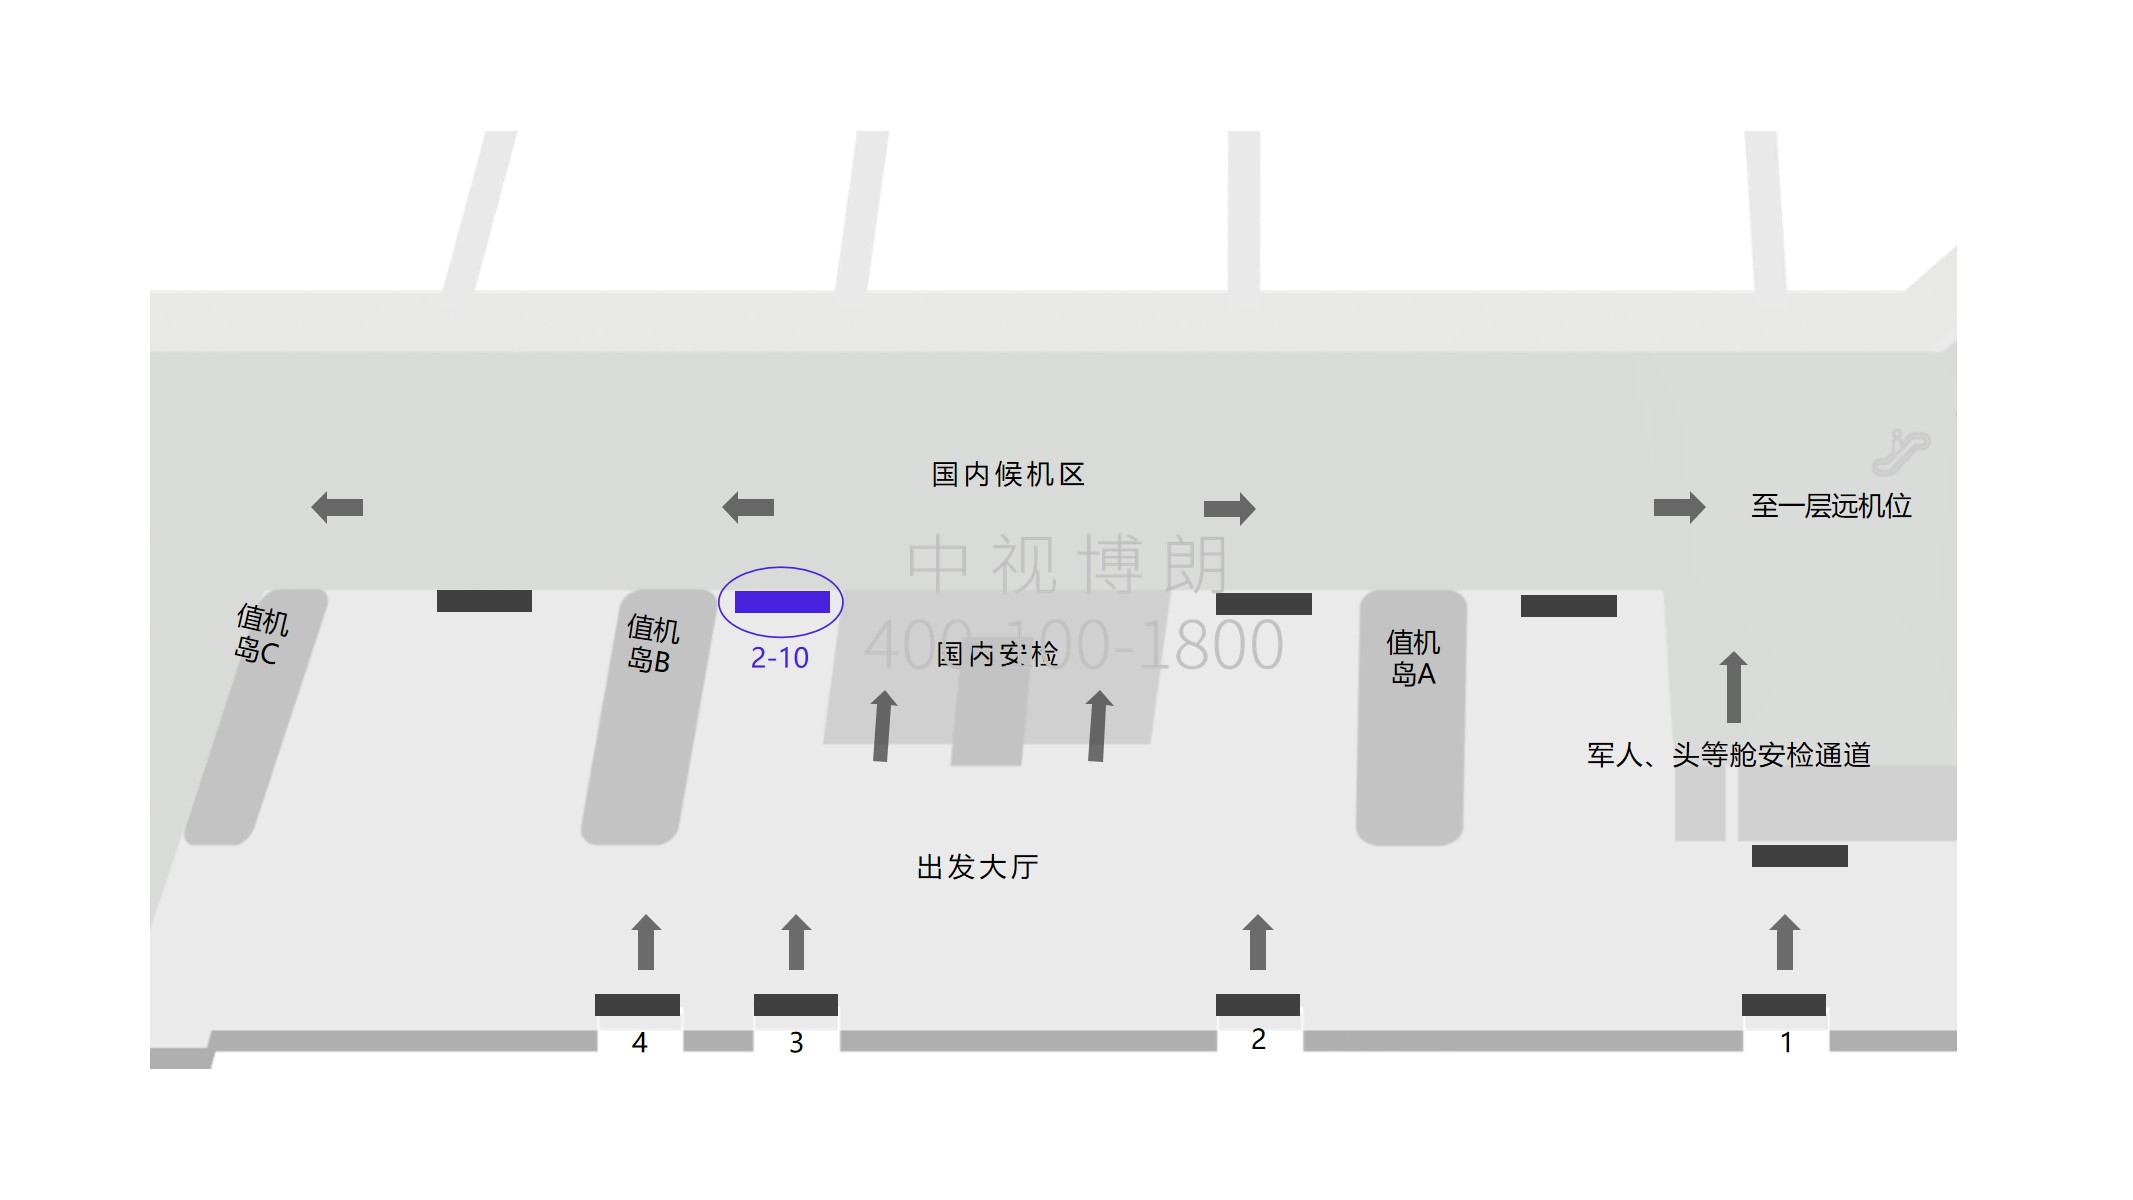 三亚机场广告-2-10出发大厅安检口处灯箱点位图